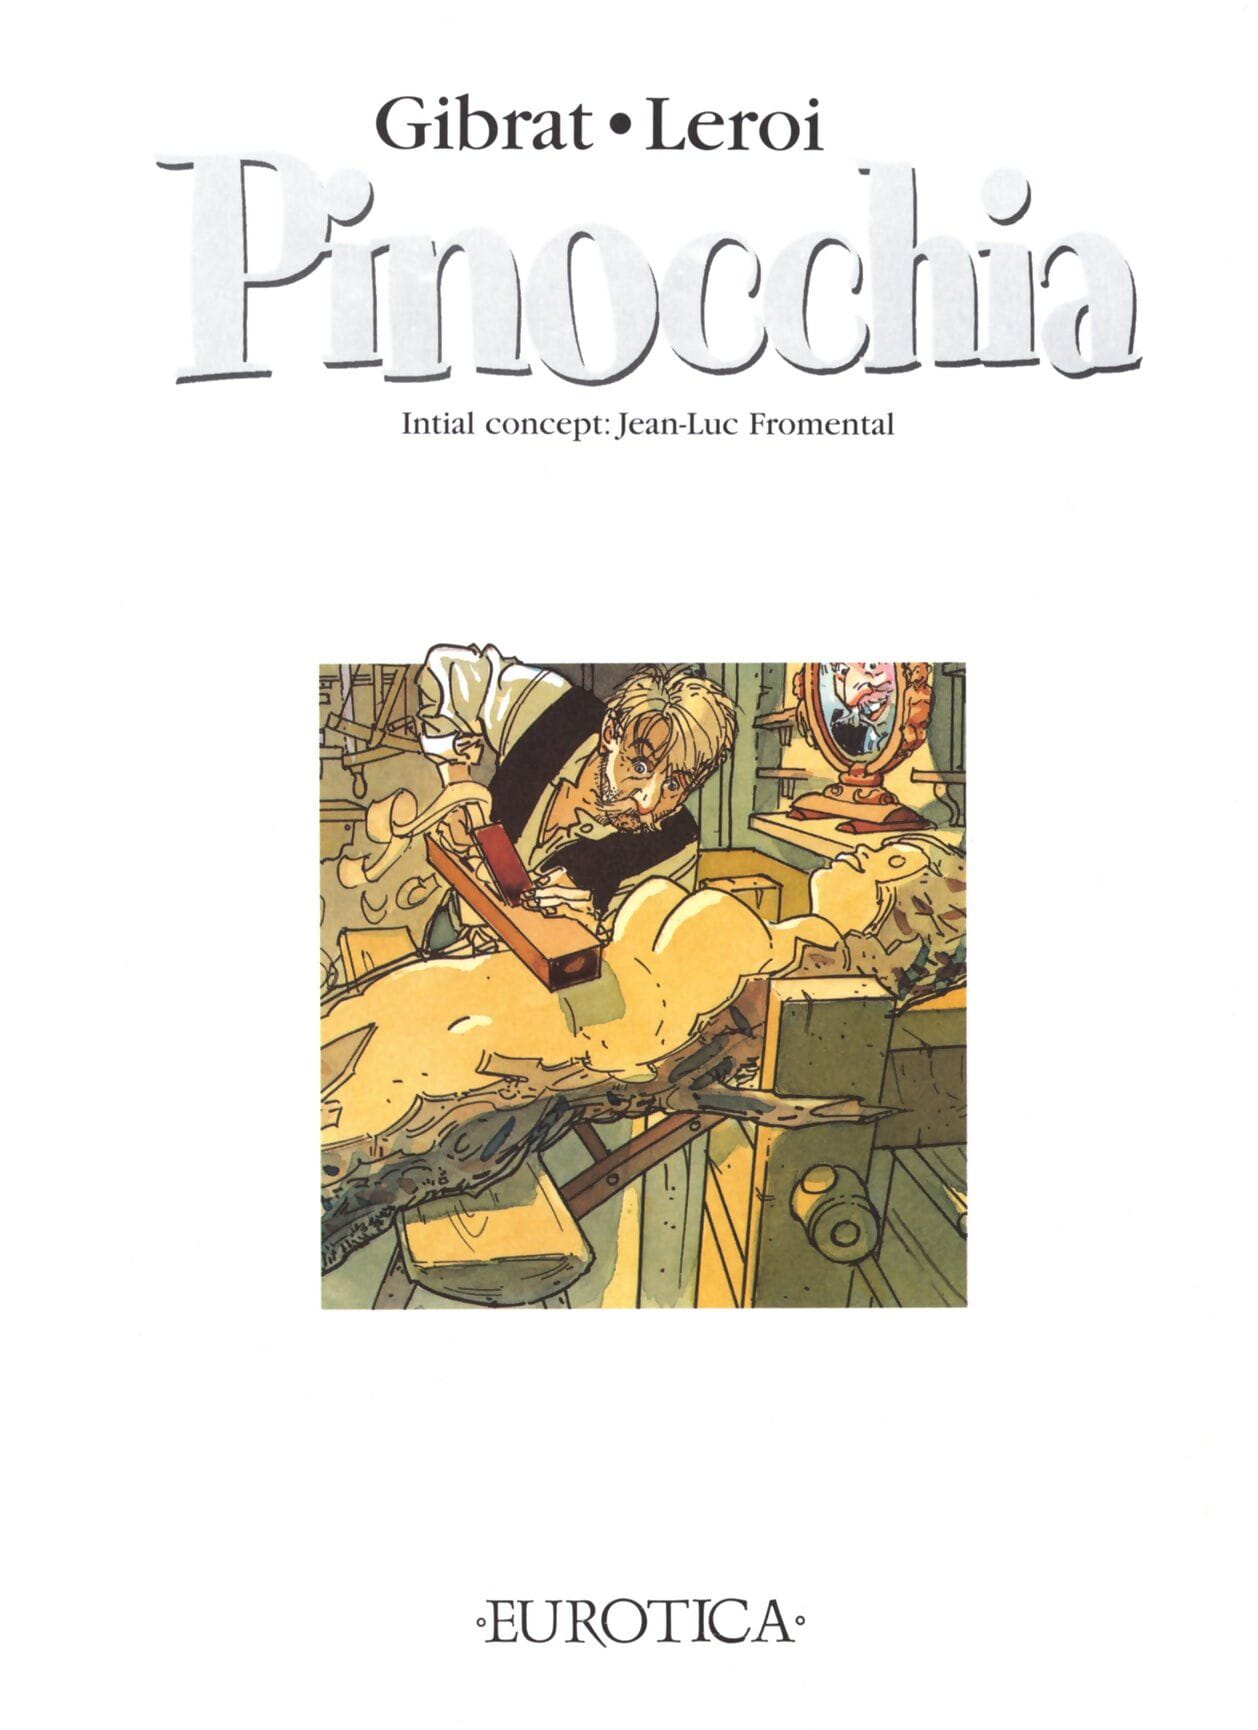 Pinocchia page 1